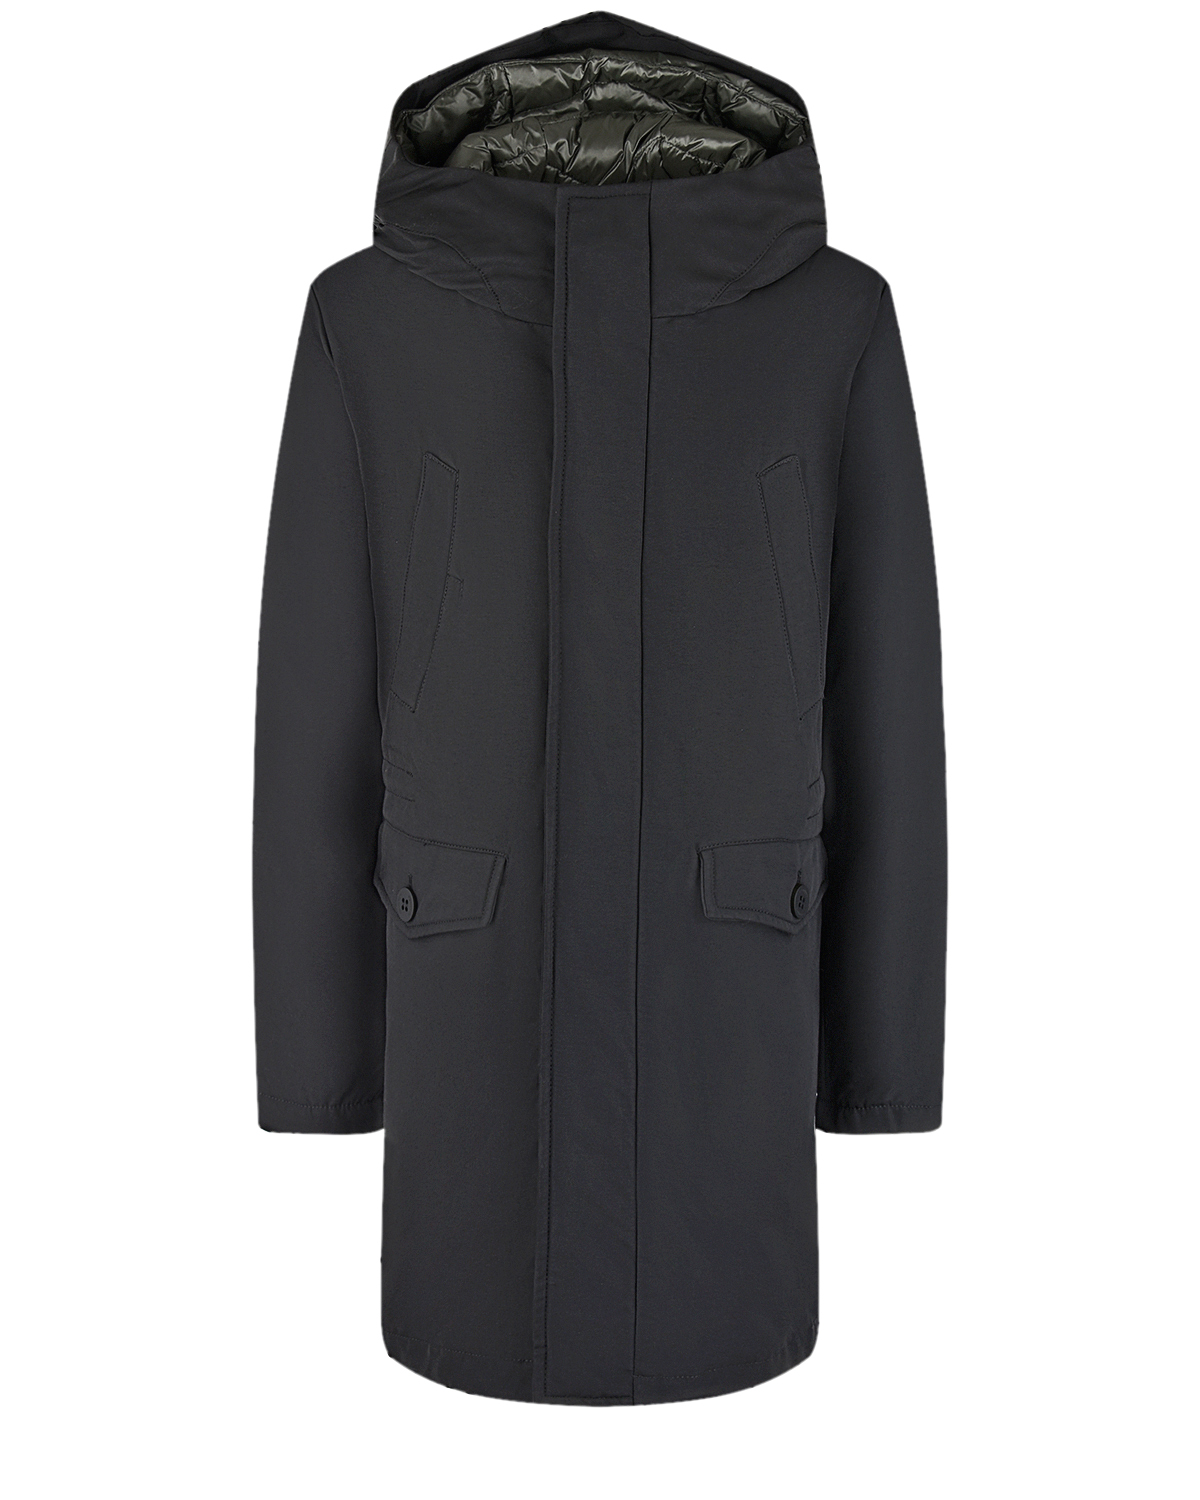 Купить Пуховое пальто черного цвета Freedomday, Черный, 61%хлопок+39%нейлон, 100%полиэстер, 90%пух+10%перо, 100%нейлон